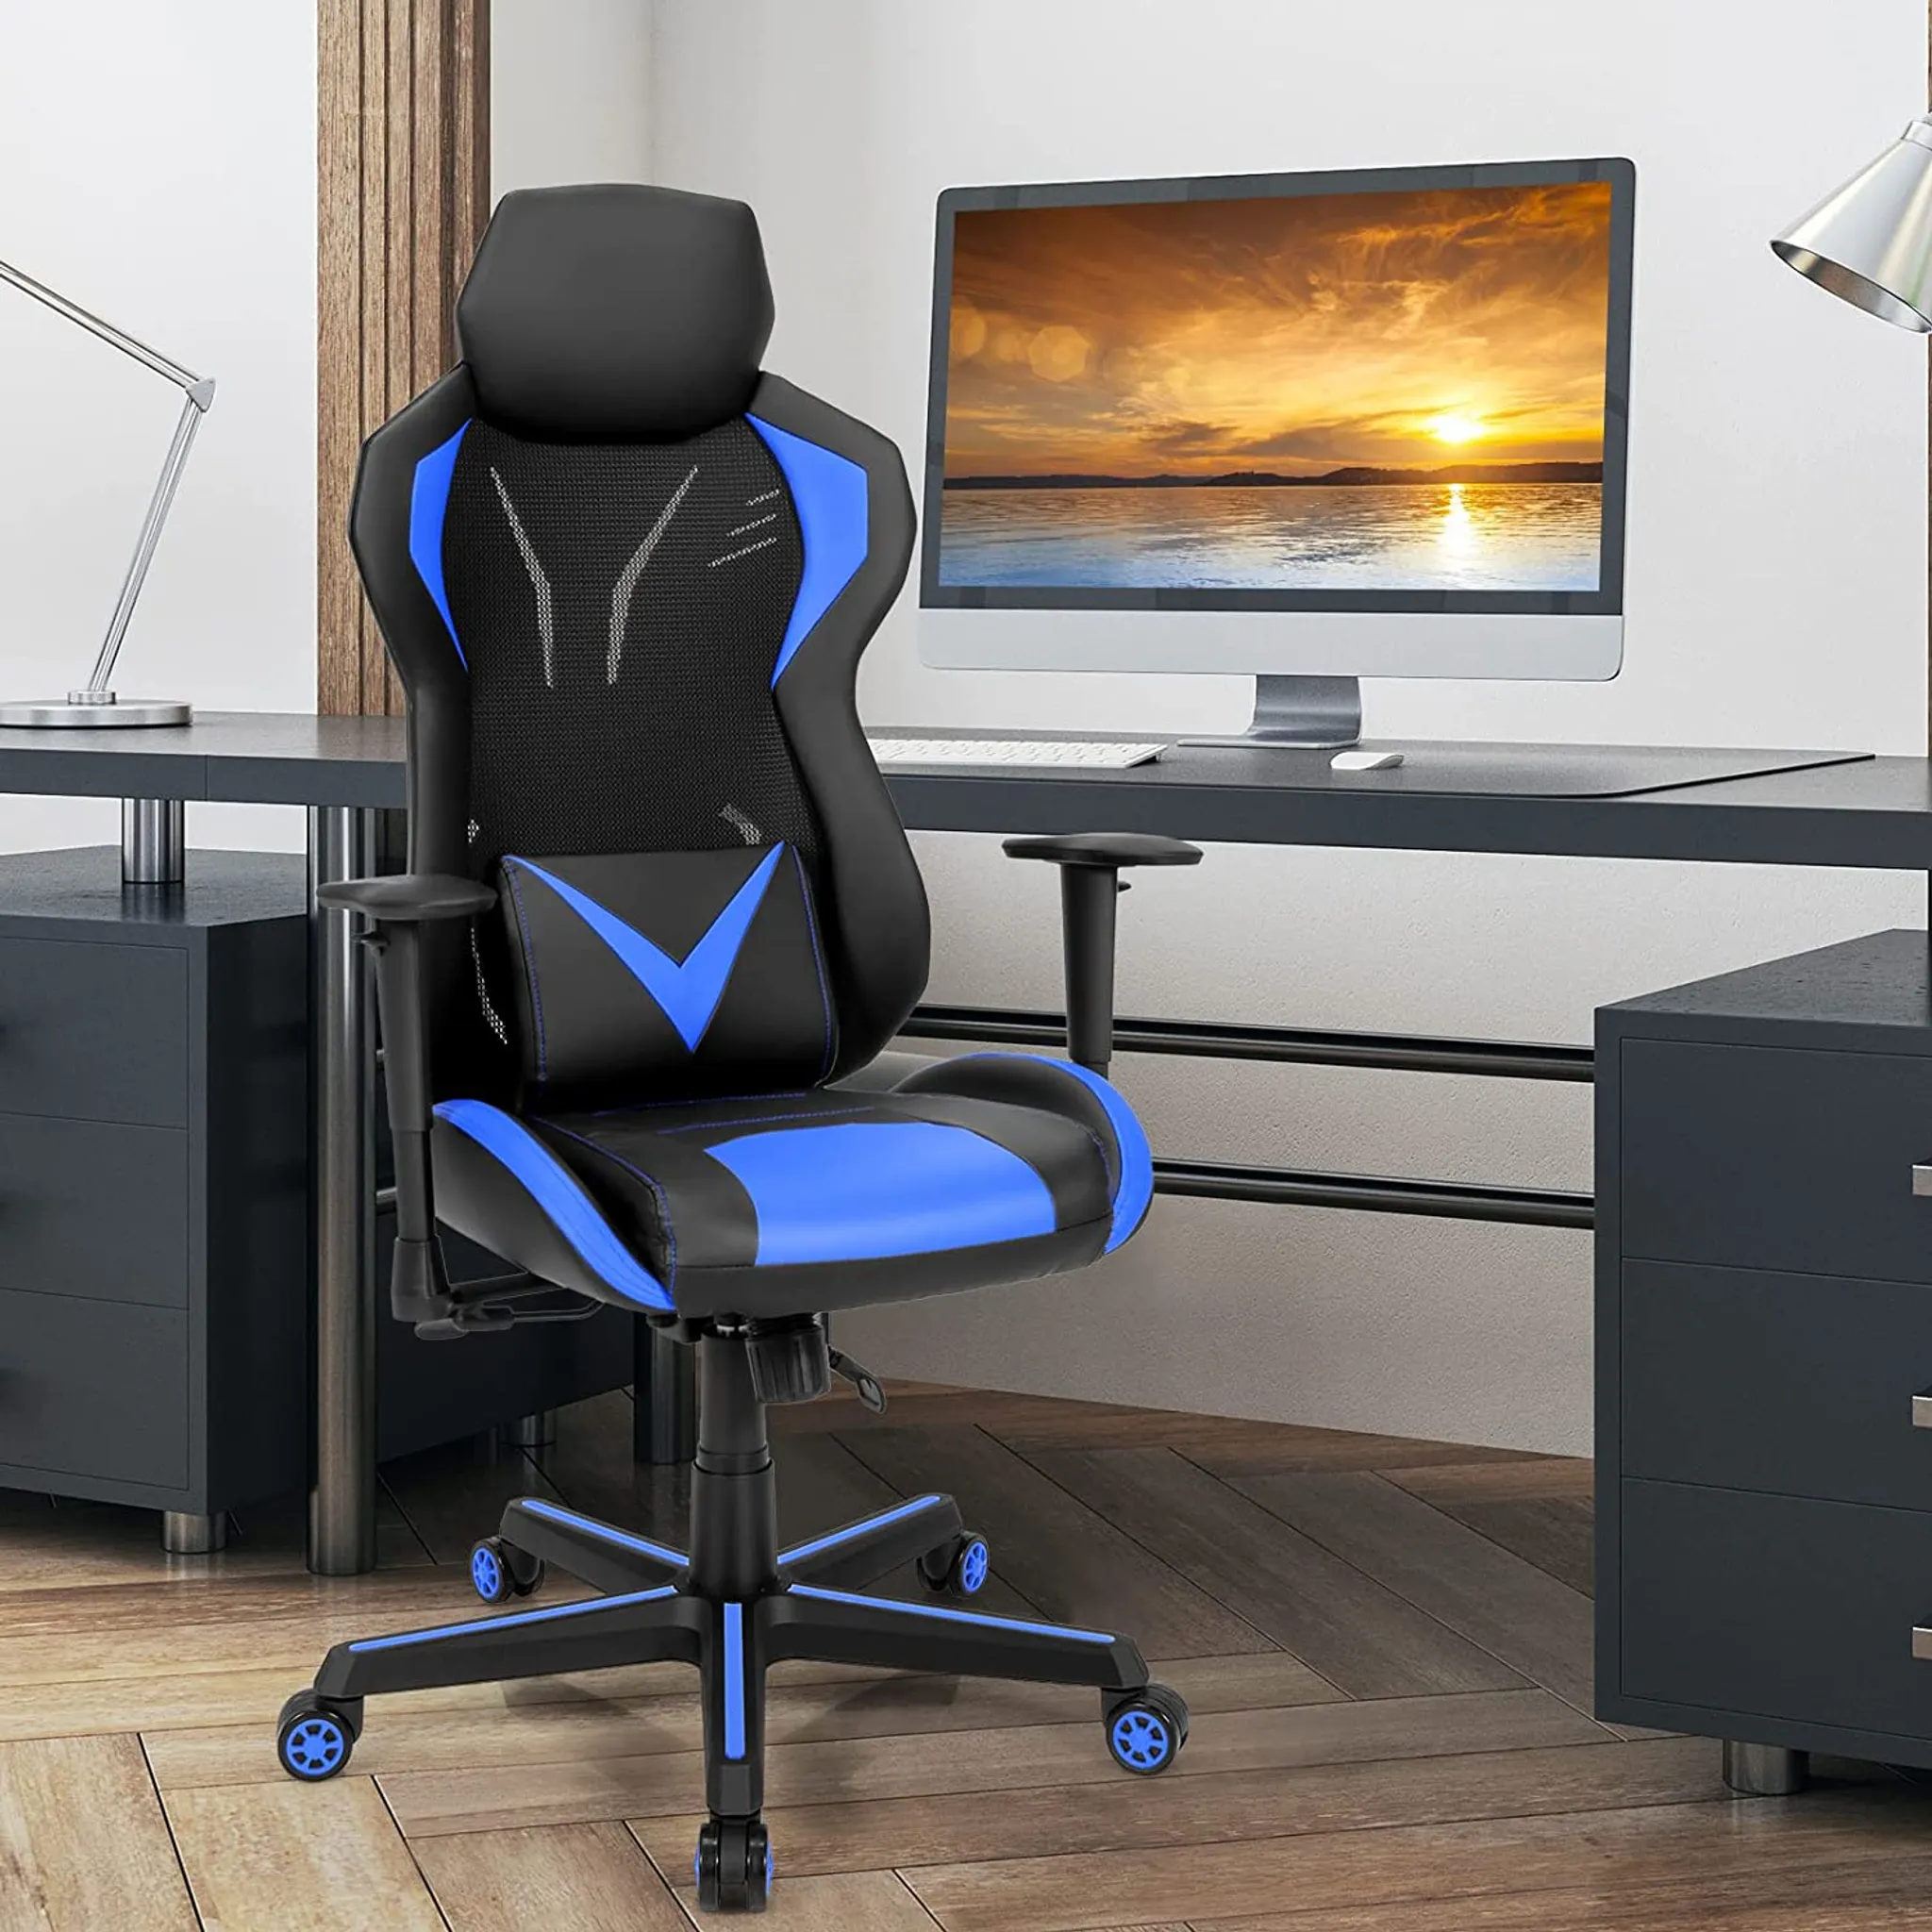 Bürostuhl mit Lendenkissen & Kopfstütze Ergonomischer Gaming Stuhl Schwarz  + Blau - Costway